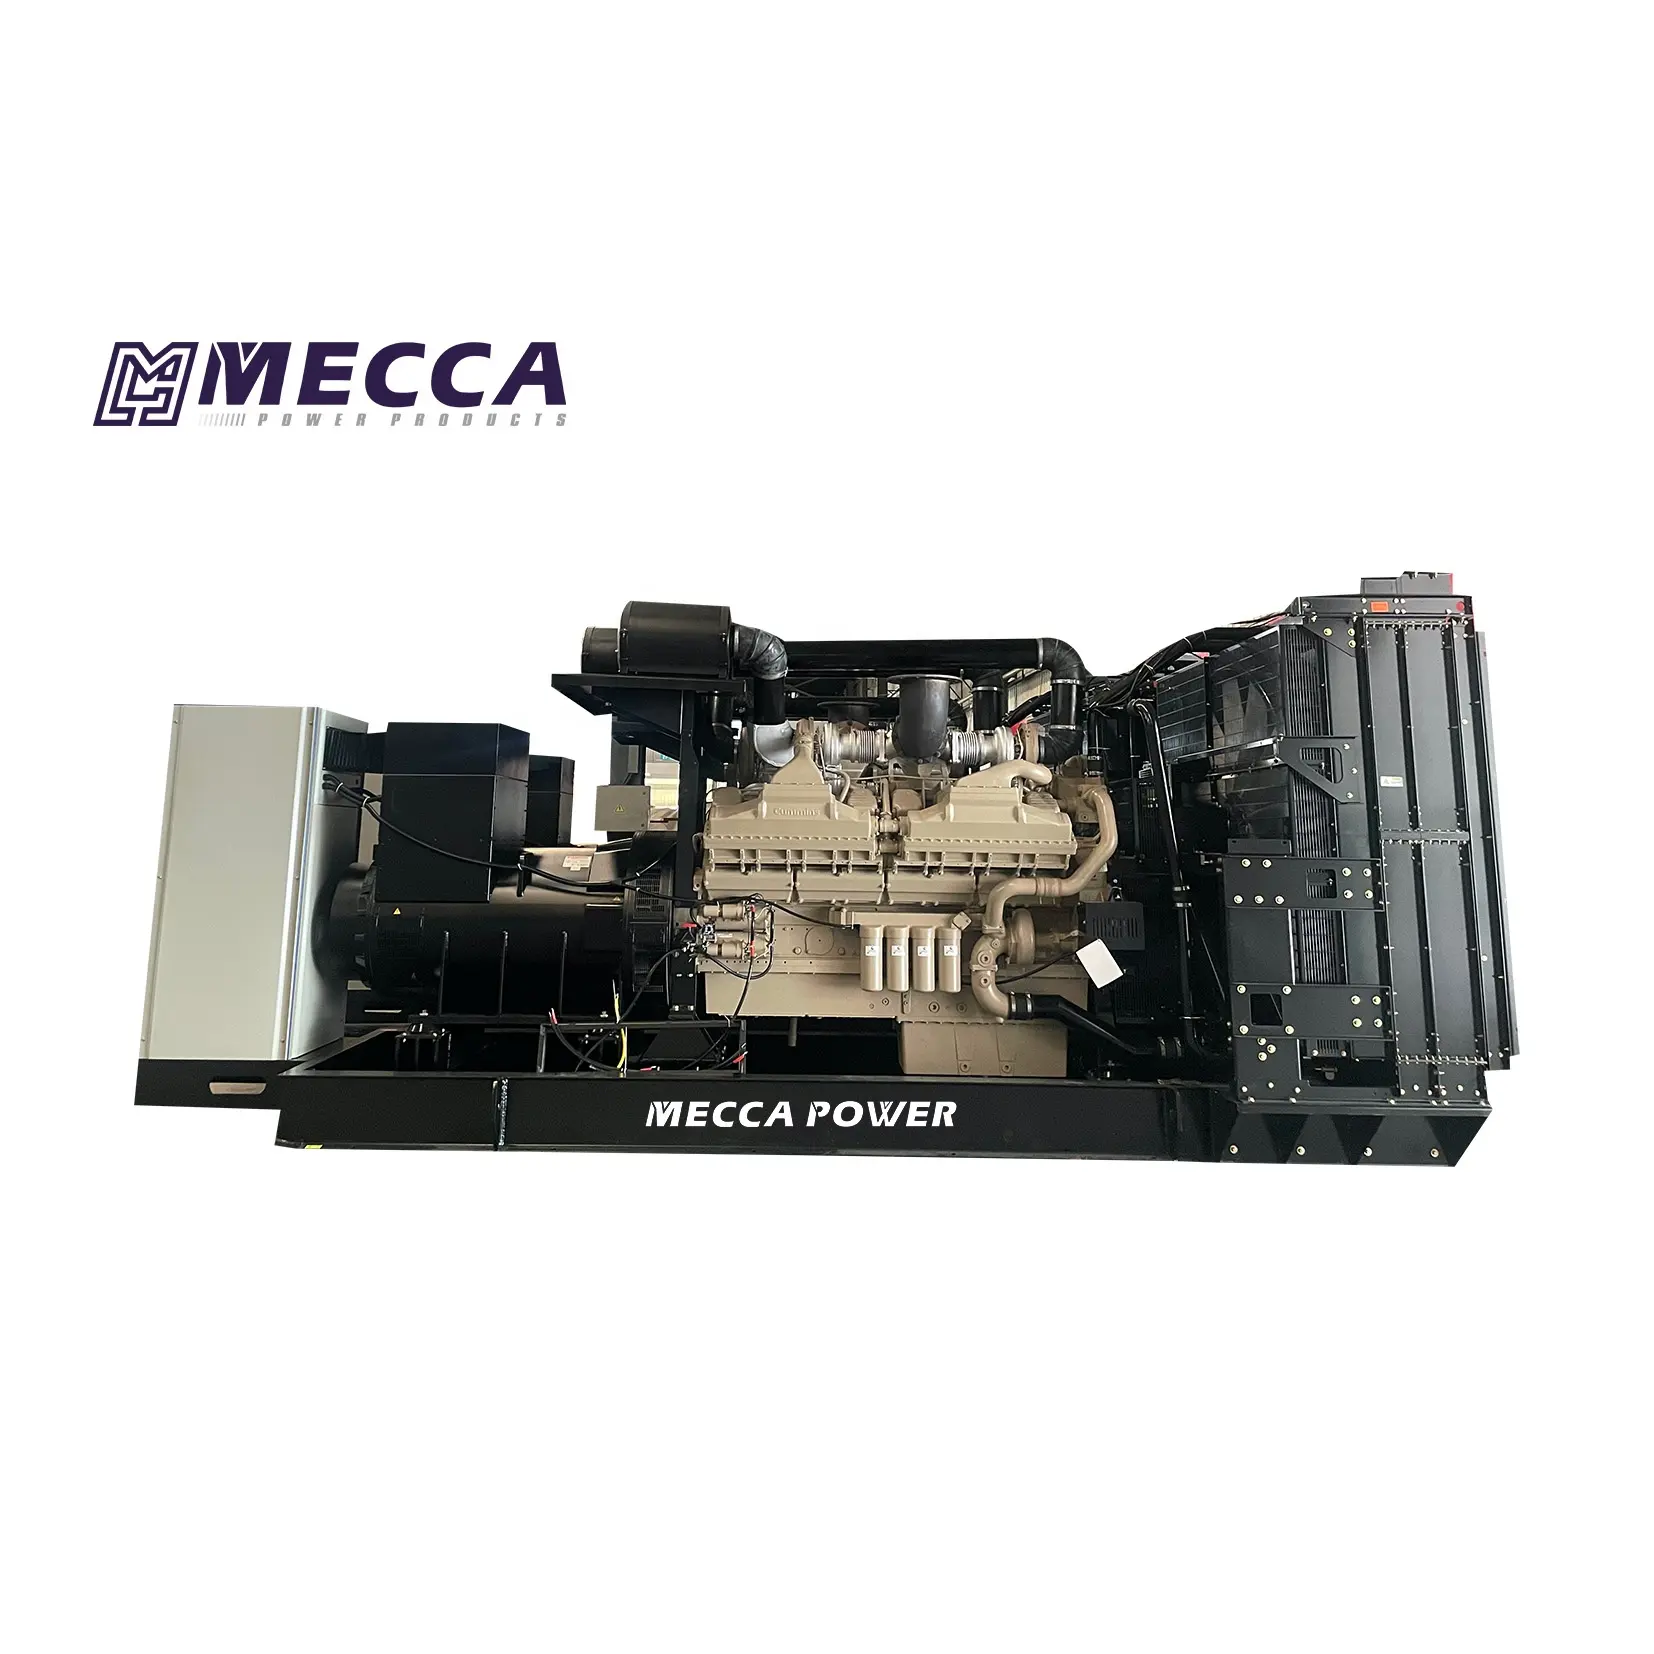 Mecca Power 2500/2600/2700kva 2000/2100/2200kw generador diesel industrial de alta capacidad motor Cummins para construcción